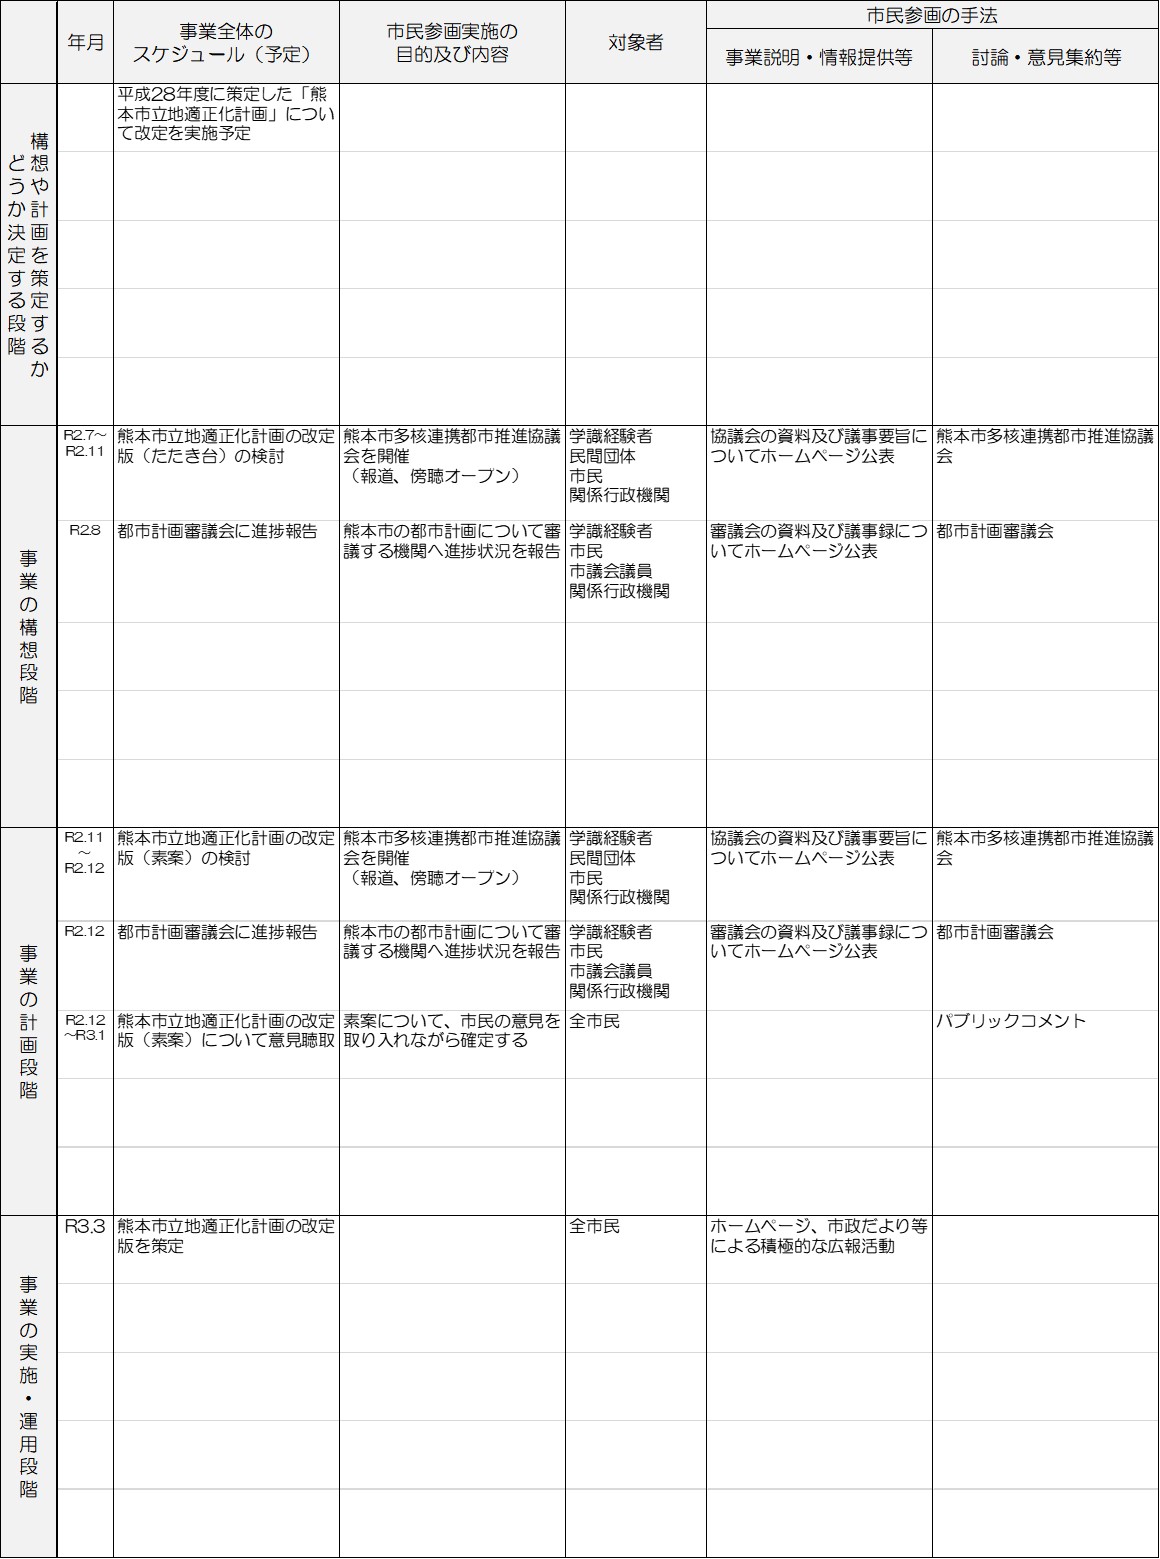 熊本市立地適正化計画の改定